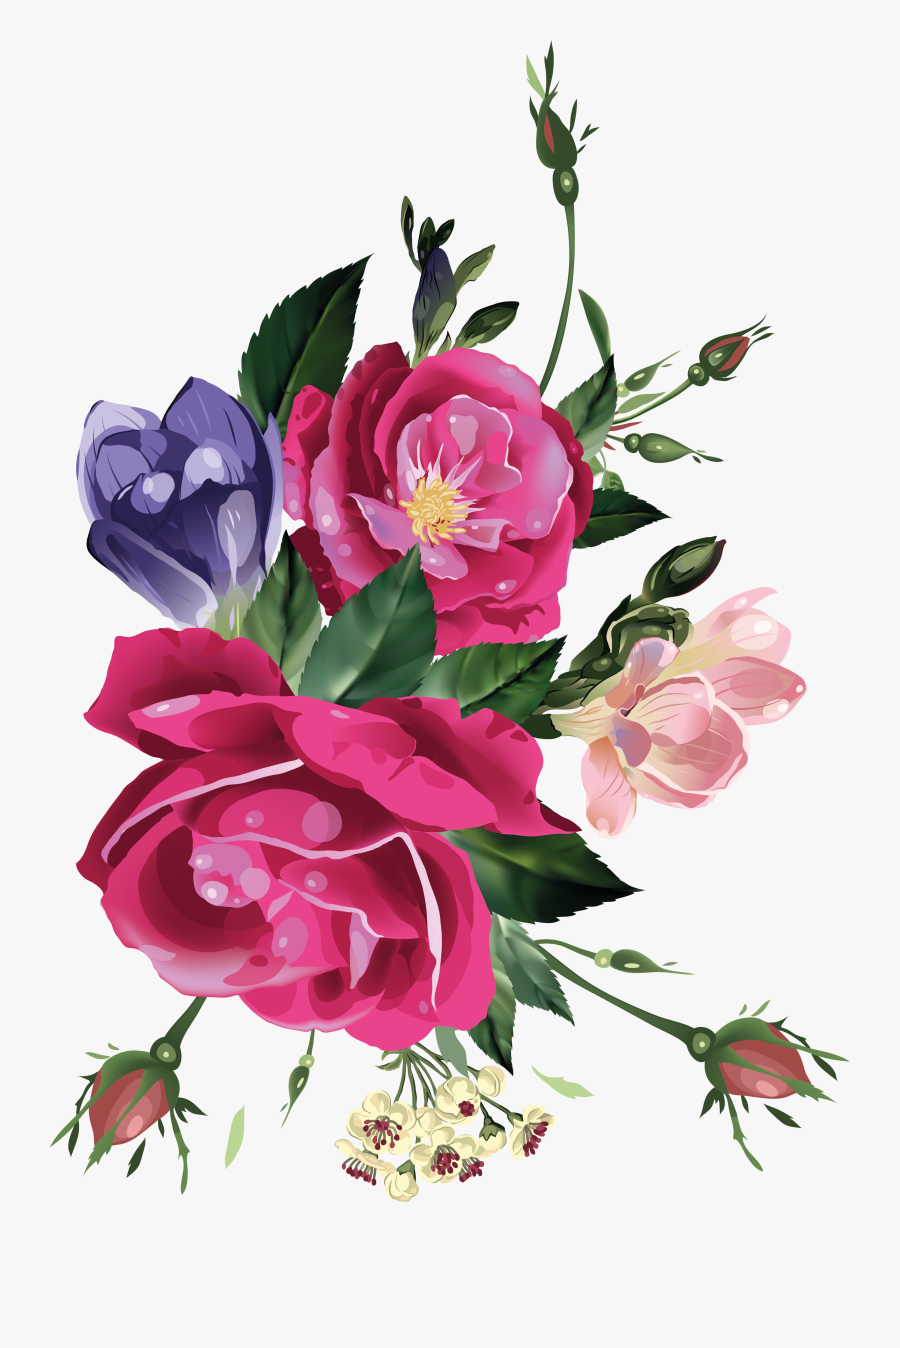 Decoupage Flowers - Flowers Image For Decoupage, Transparent Clipart